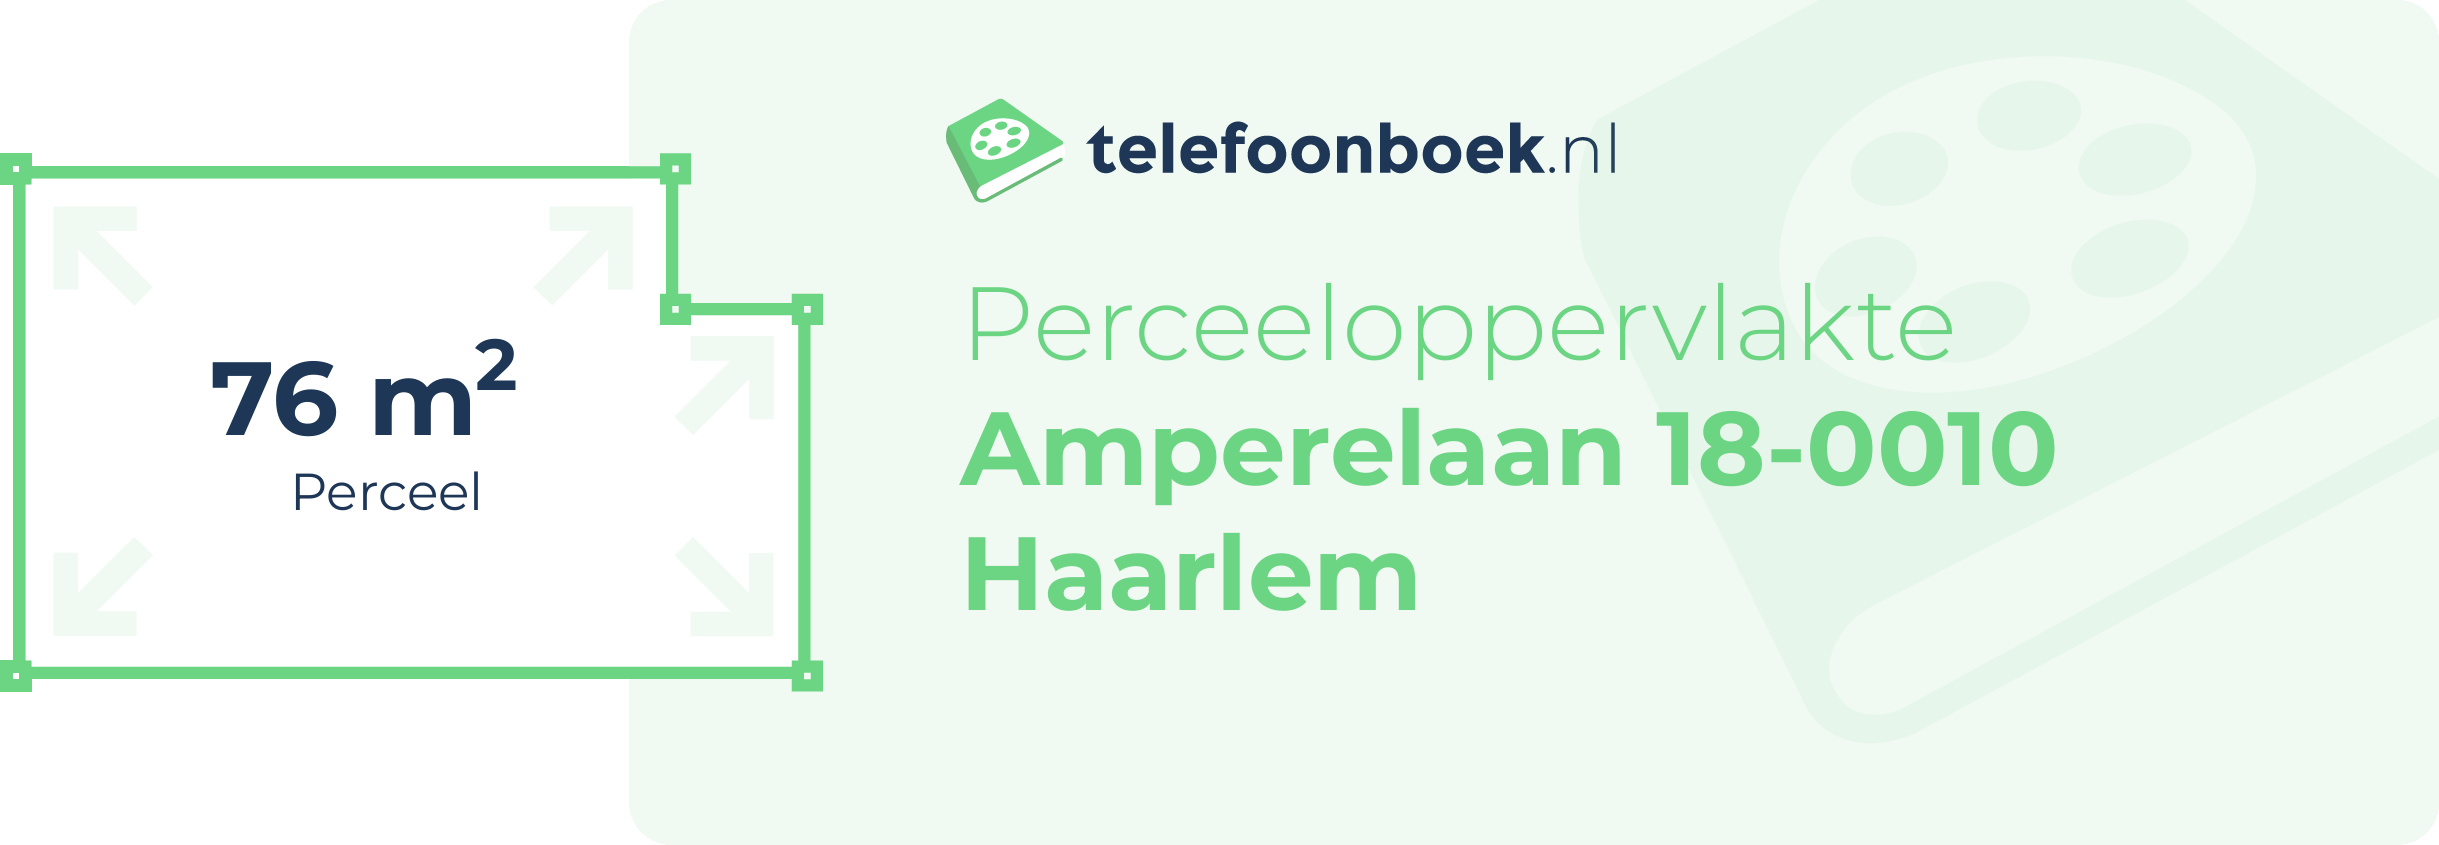 Perceeloppervlakte Amperelaan 18-0010 Haarlem